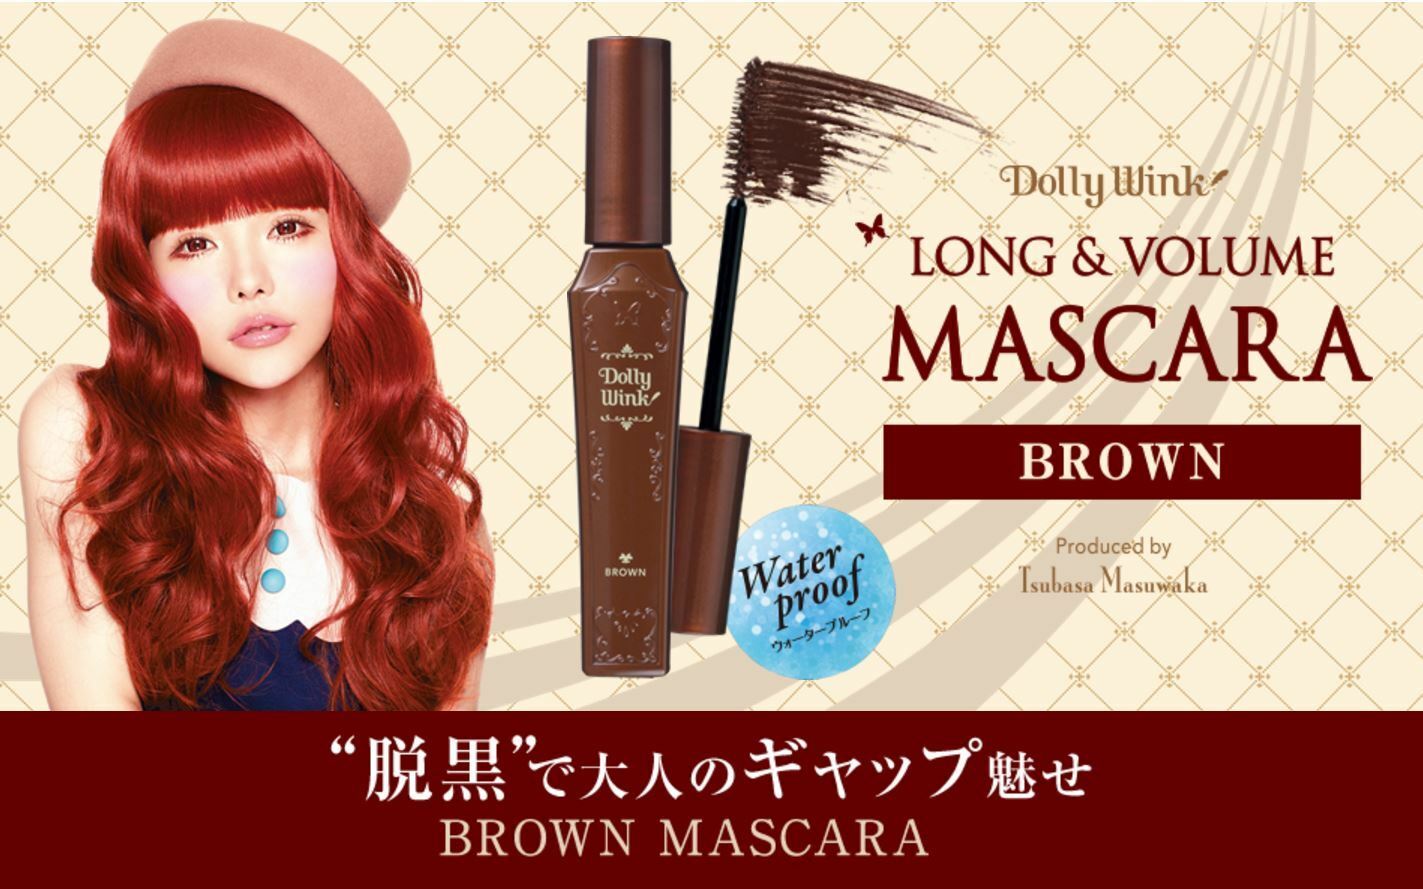 Mascara Chuốt Dài Và Dày Mi, Dưỡng Mi Màu Nâu Nhật Bản Koji Dolly Wink Long &amp; Volume Mascara Brown, Chống Mồ Hôi, Không Bị Vón Cục